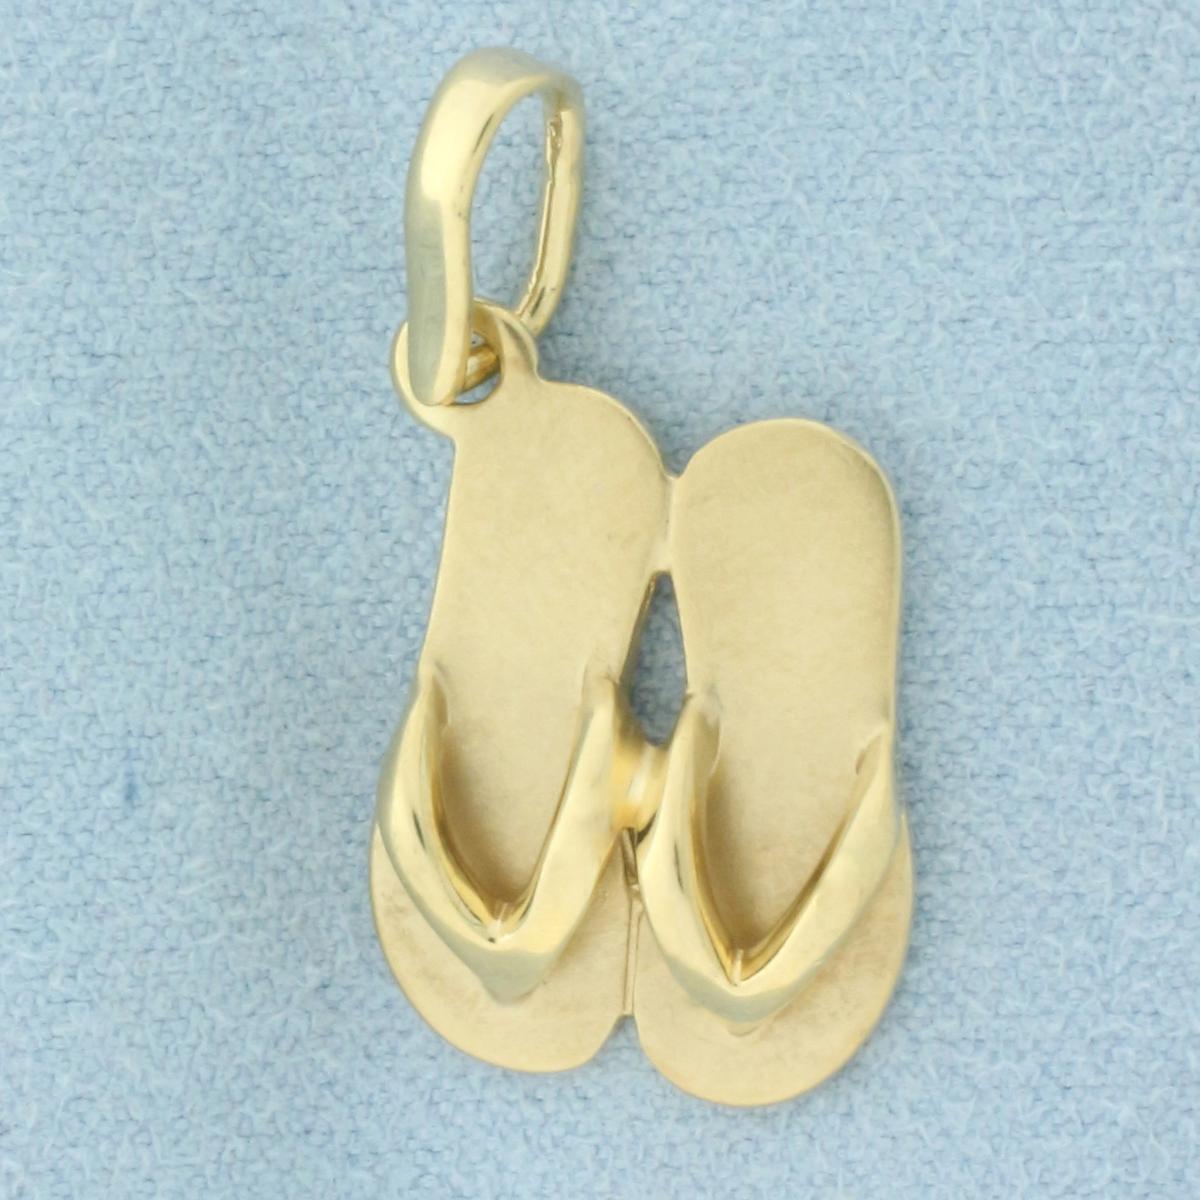 Flip Flops Pendant In 14k Yellow Gold